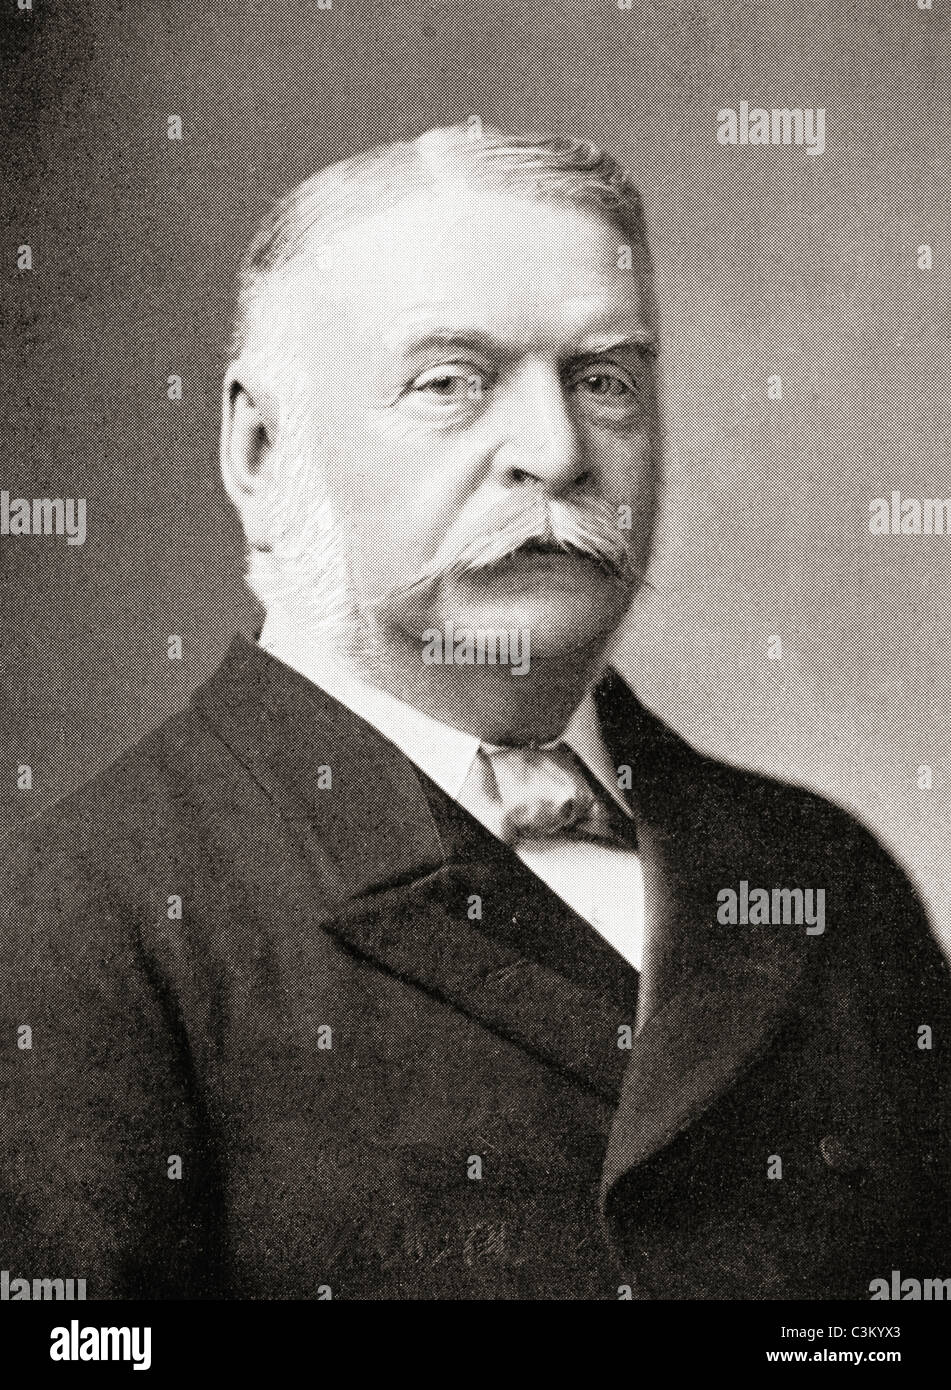 James Kitson, 1er baron Airedale, 1835 - 1911. Par les pairs britannique et homme politique français. Banque D'Images